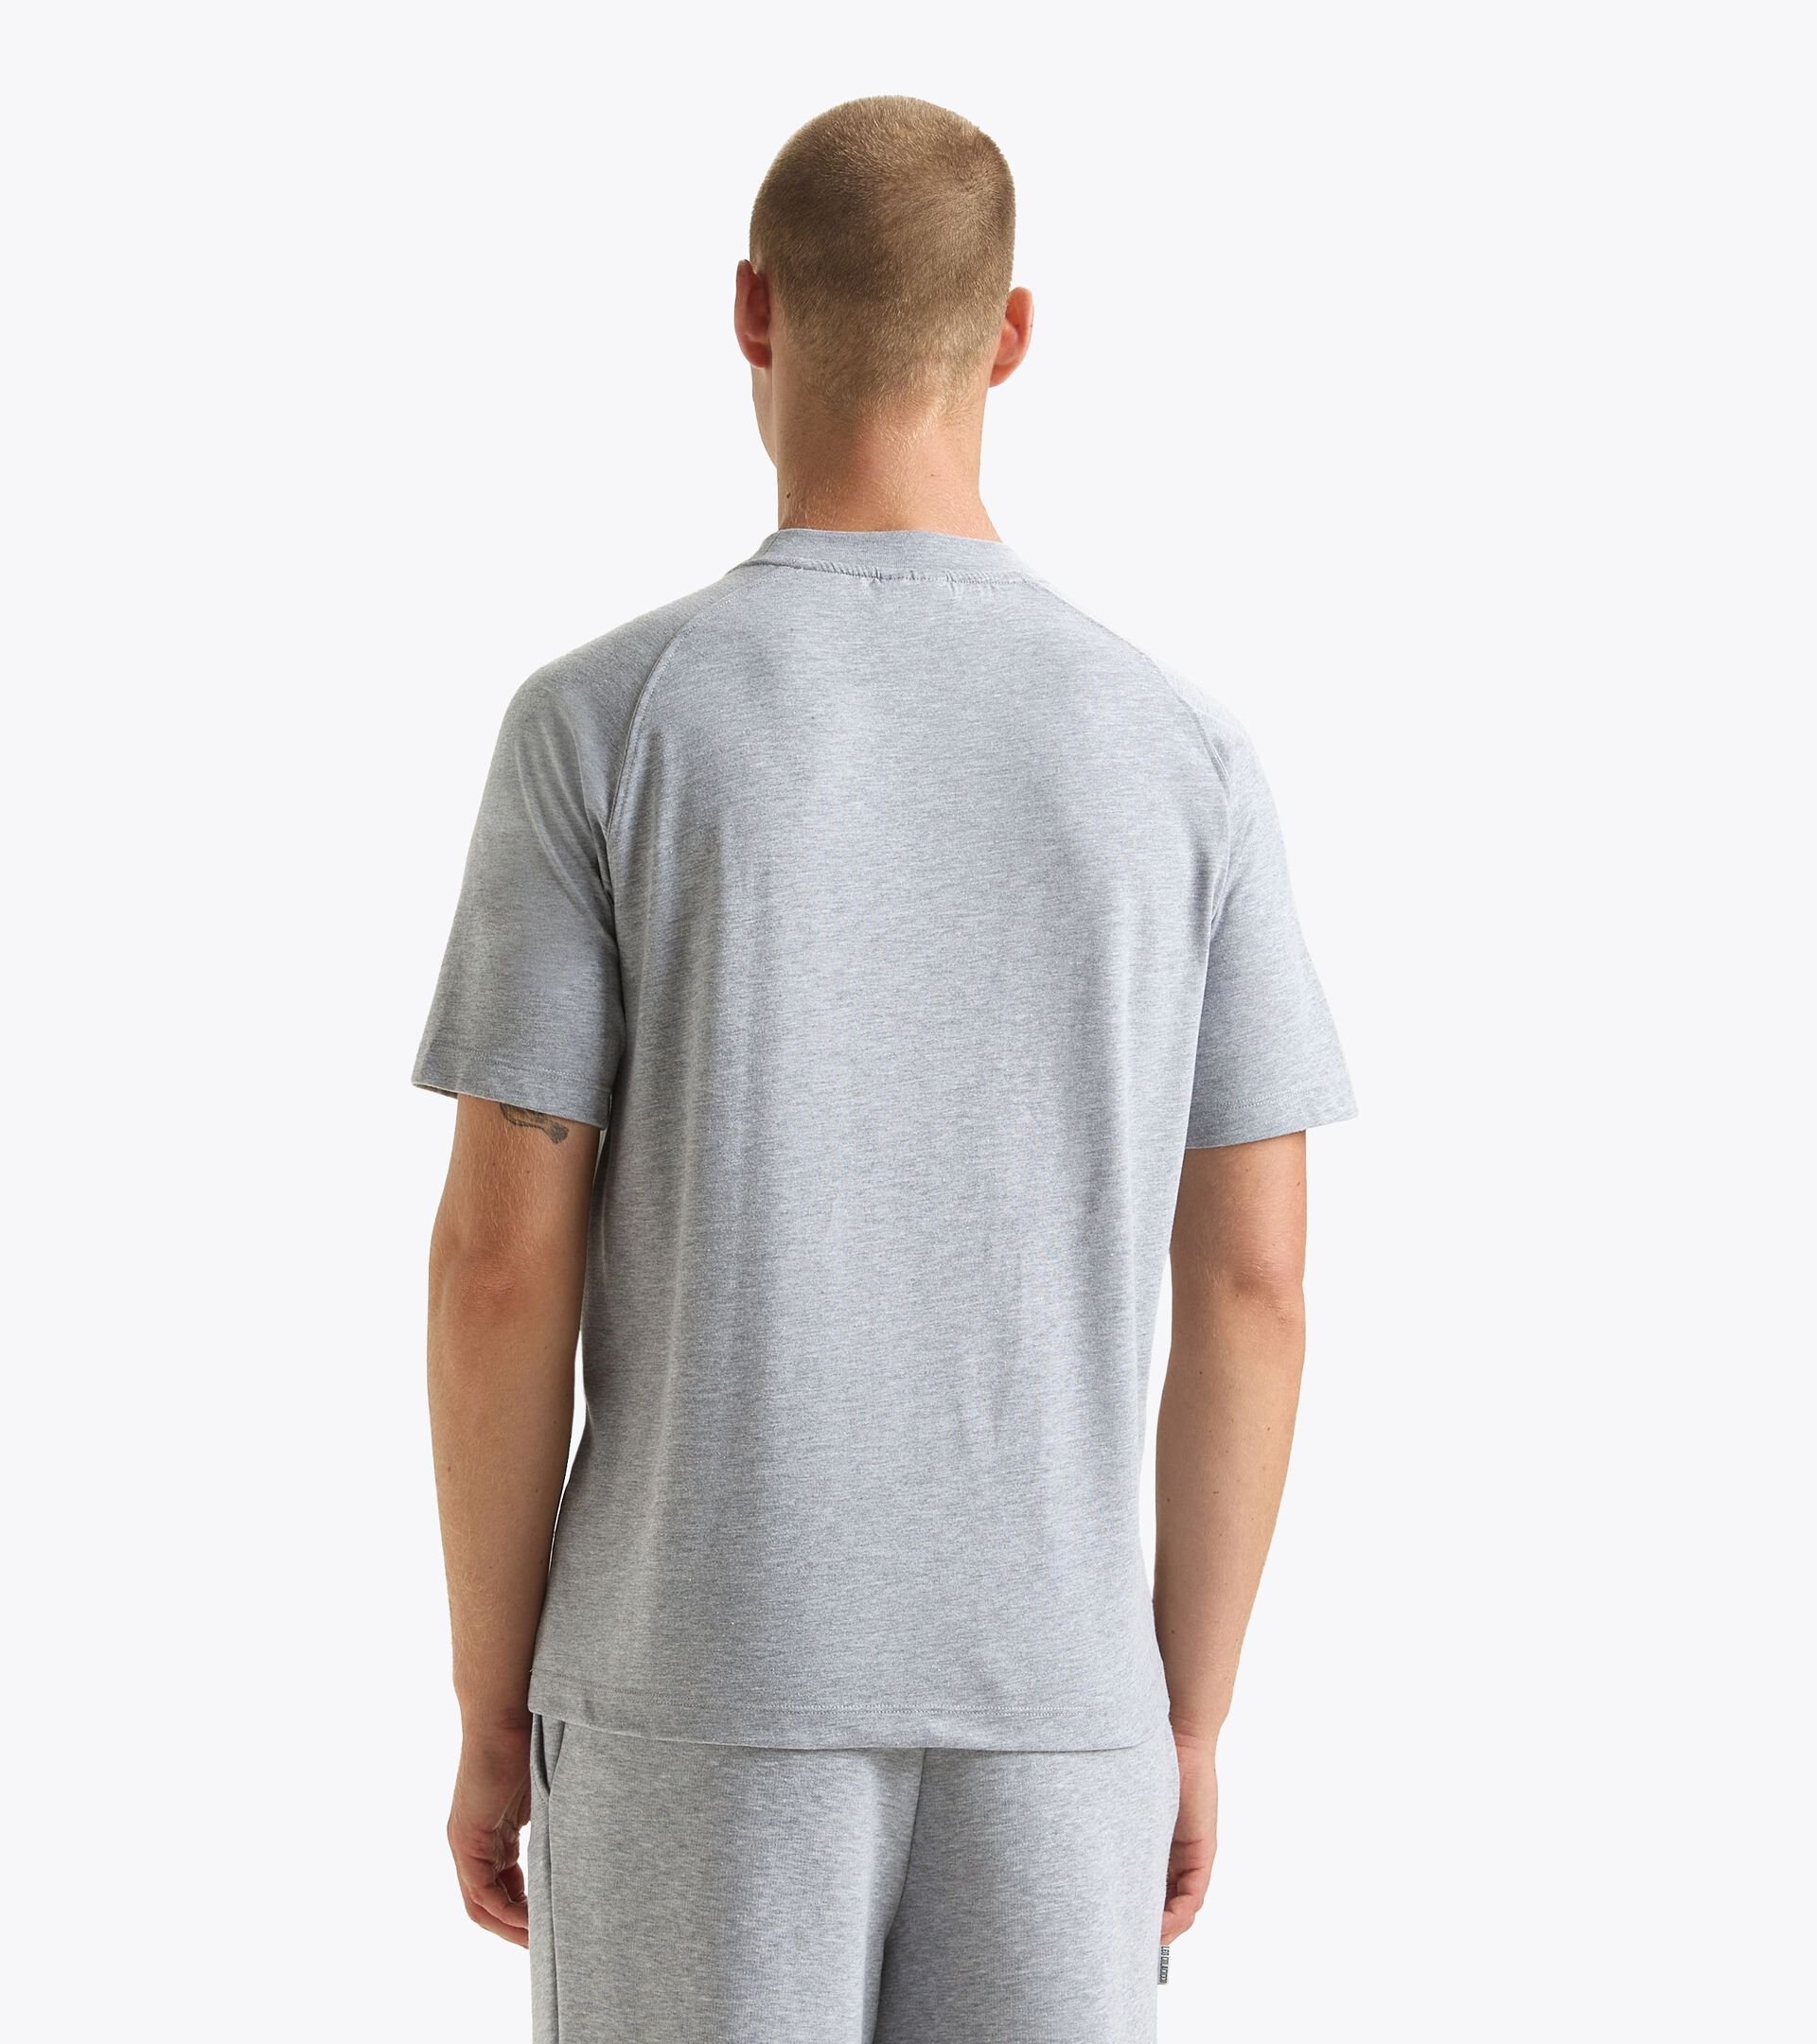 T-shirt - Gender Neutral T-SHIRT SS 1948 ATHL. CLUB HIGH RISE MELANGE - Diadora